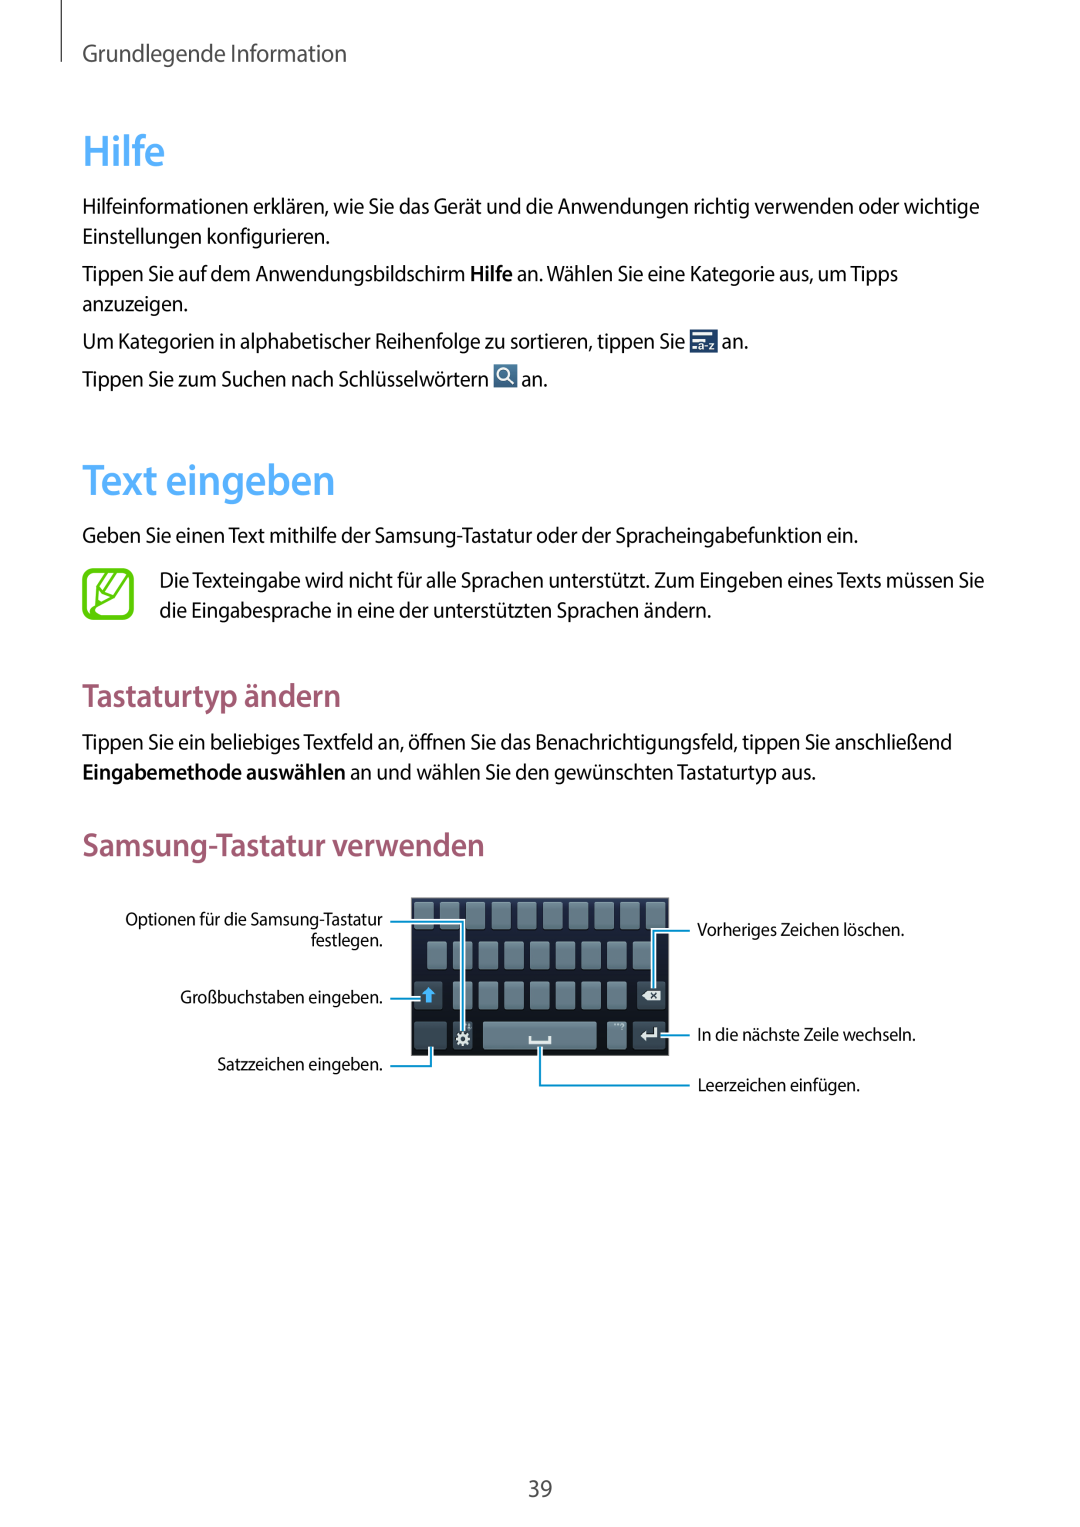 Samsung SM-C1010ZWADBT Hilfe, Text eingeben, Tastaturtyp ändern, Samsung-Tastatur verwenden, Grundlegende Information 